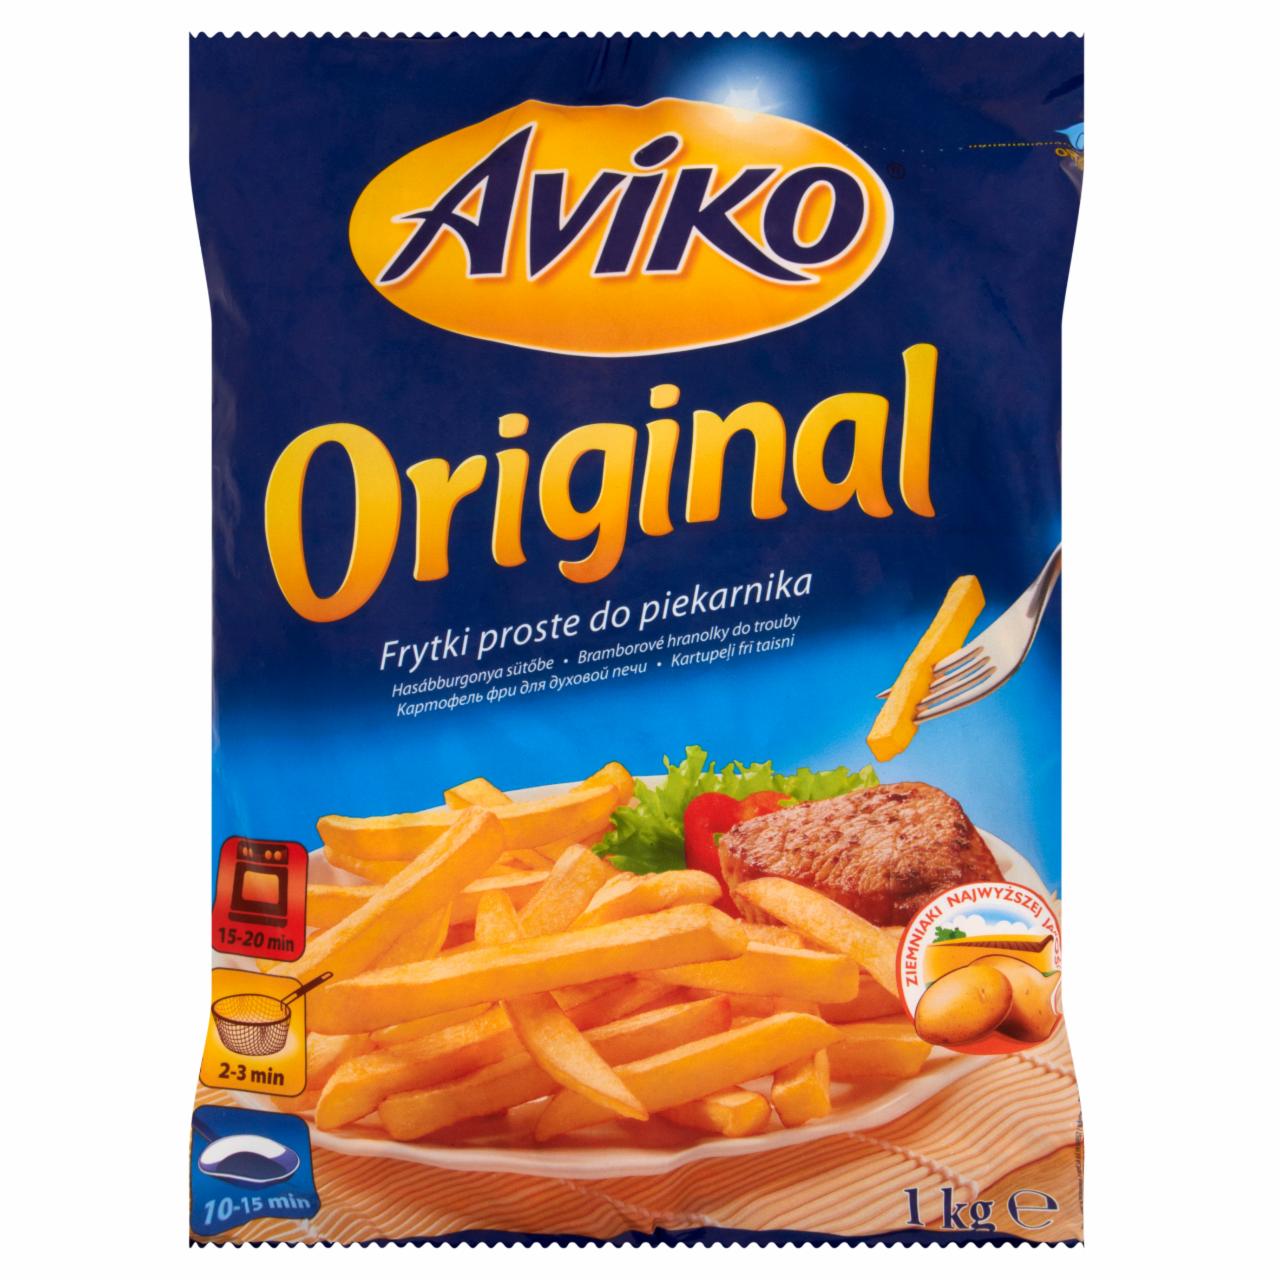 Zdjęcia - Aviko Original Frytki proste do piekarnika 1 kg